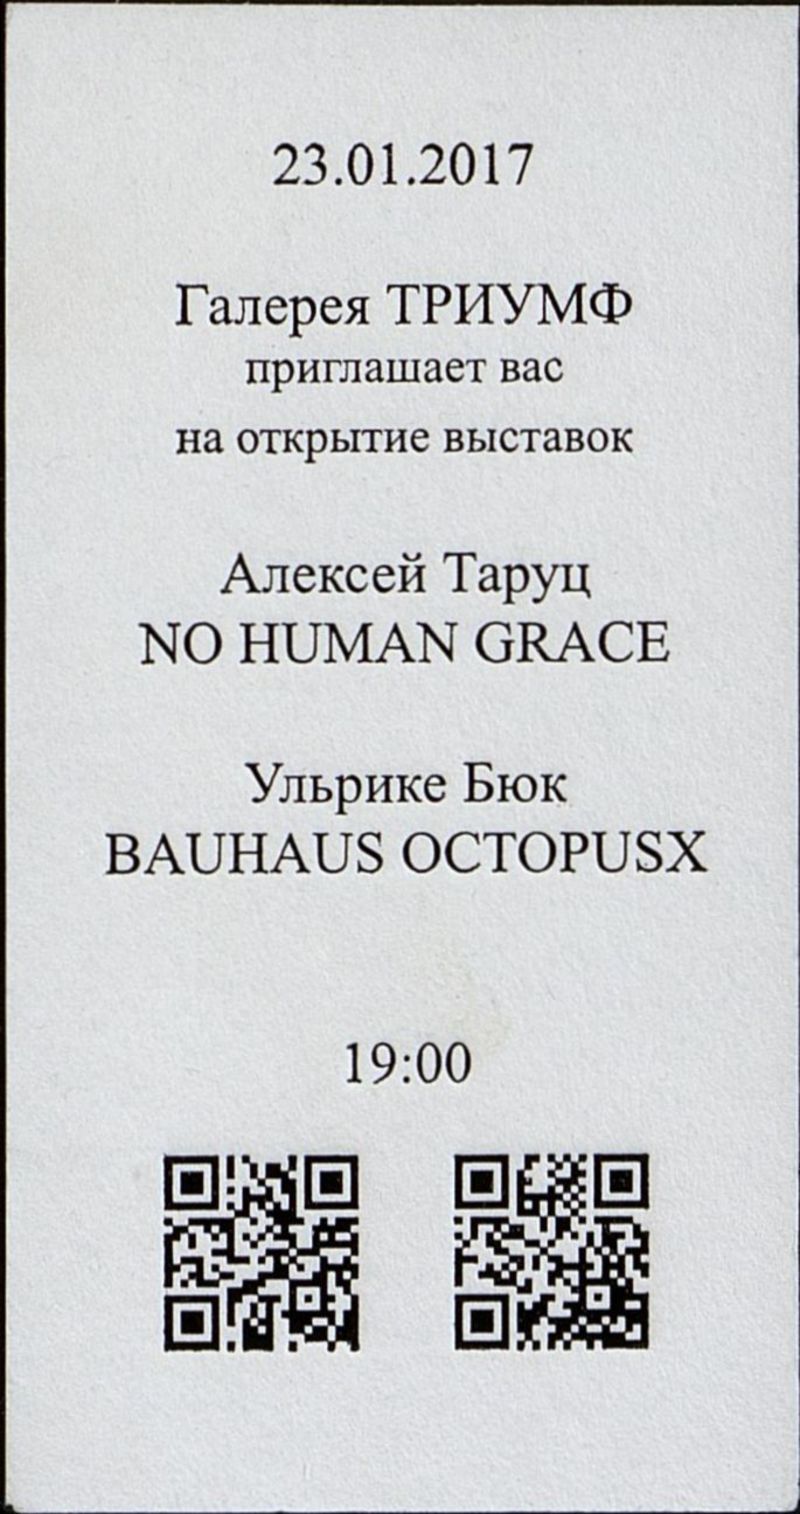 Алексей Таруц. No Human Grace/ Ульрике Бюк. Bauhaus octopusx